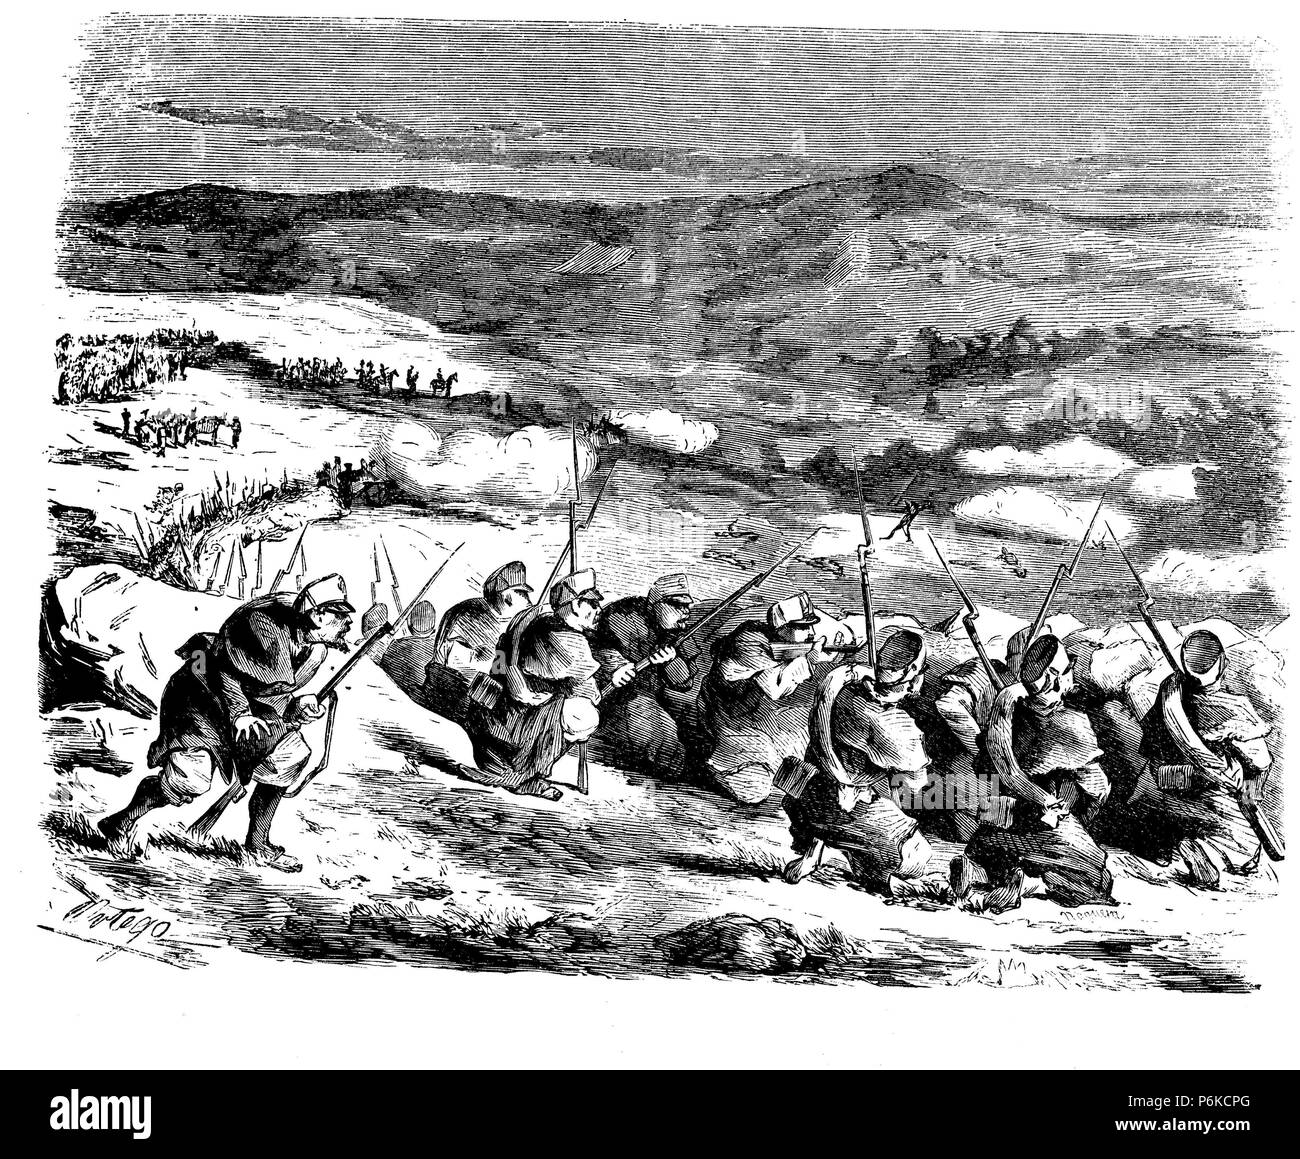 Guerra de África. Año 1860. Soldados españoles en combate. Dibujo de Ortego. Grabado de 1860. Stock Photo